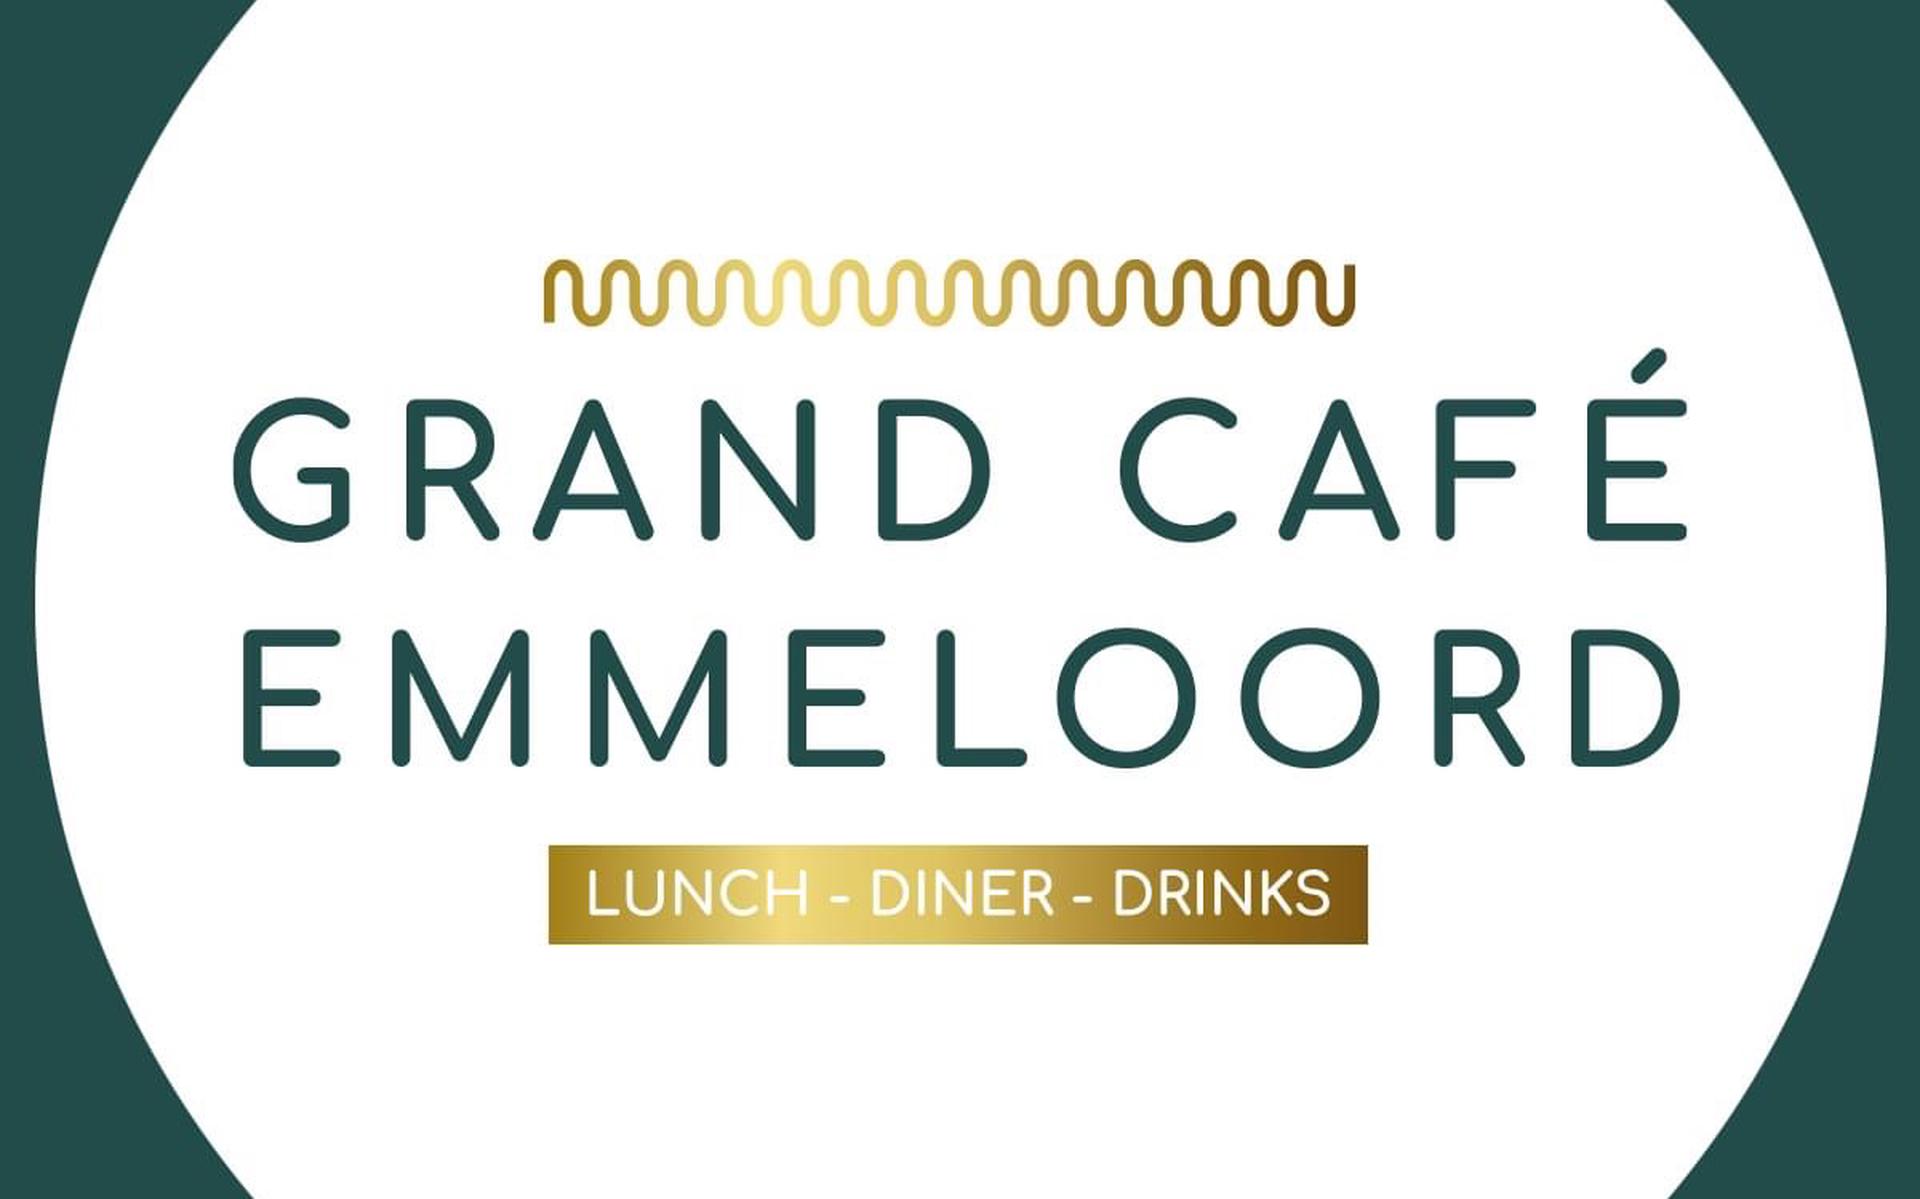 Grand Café Emmeloord.